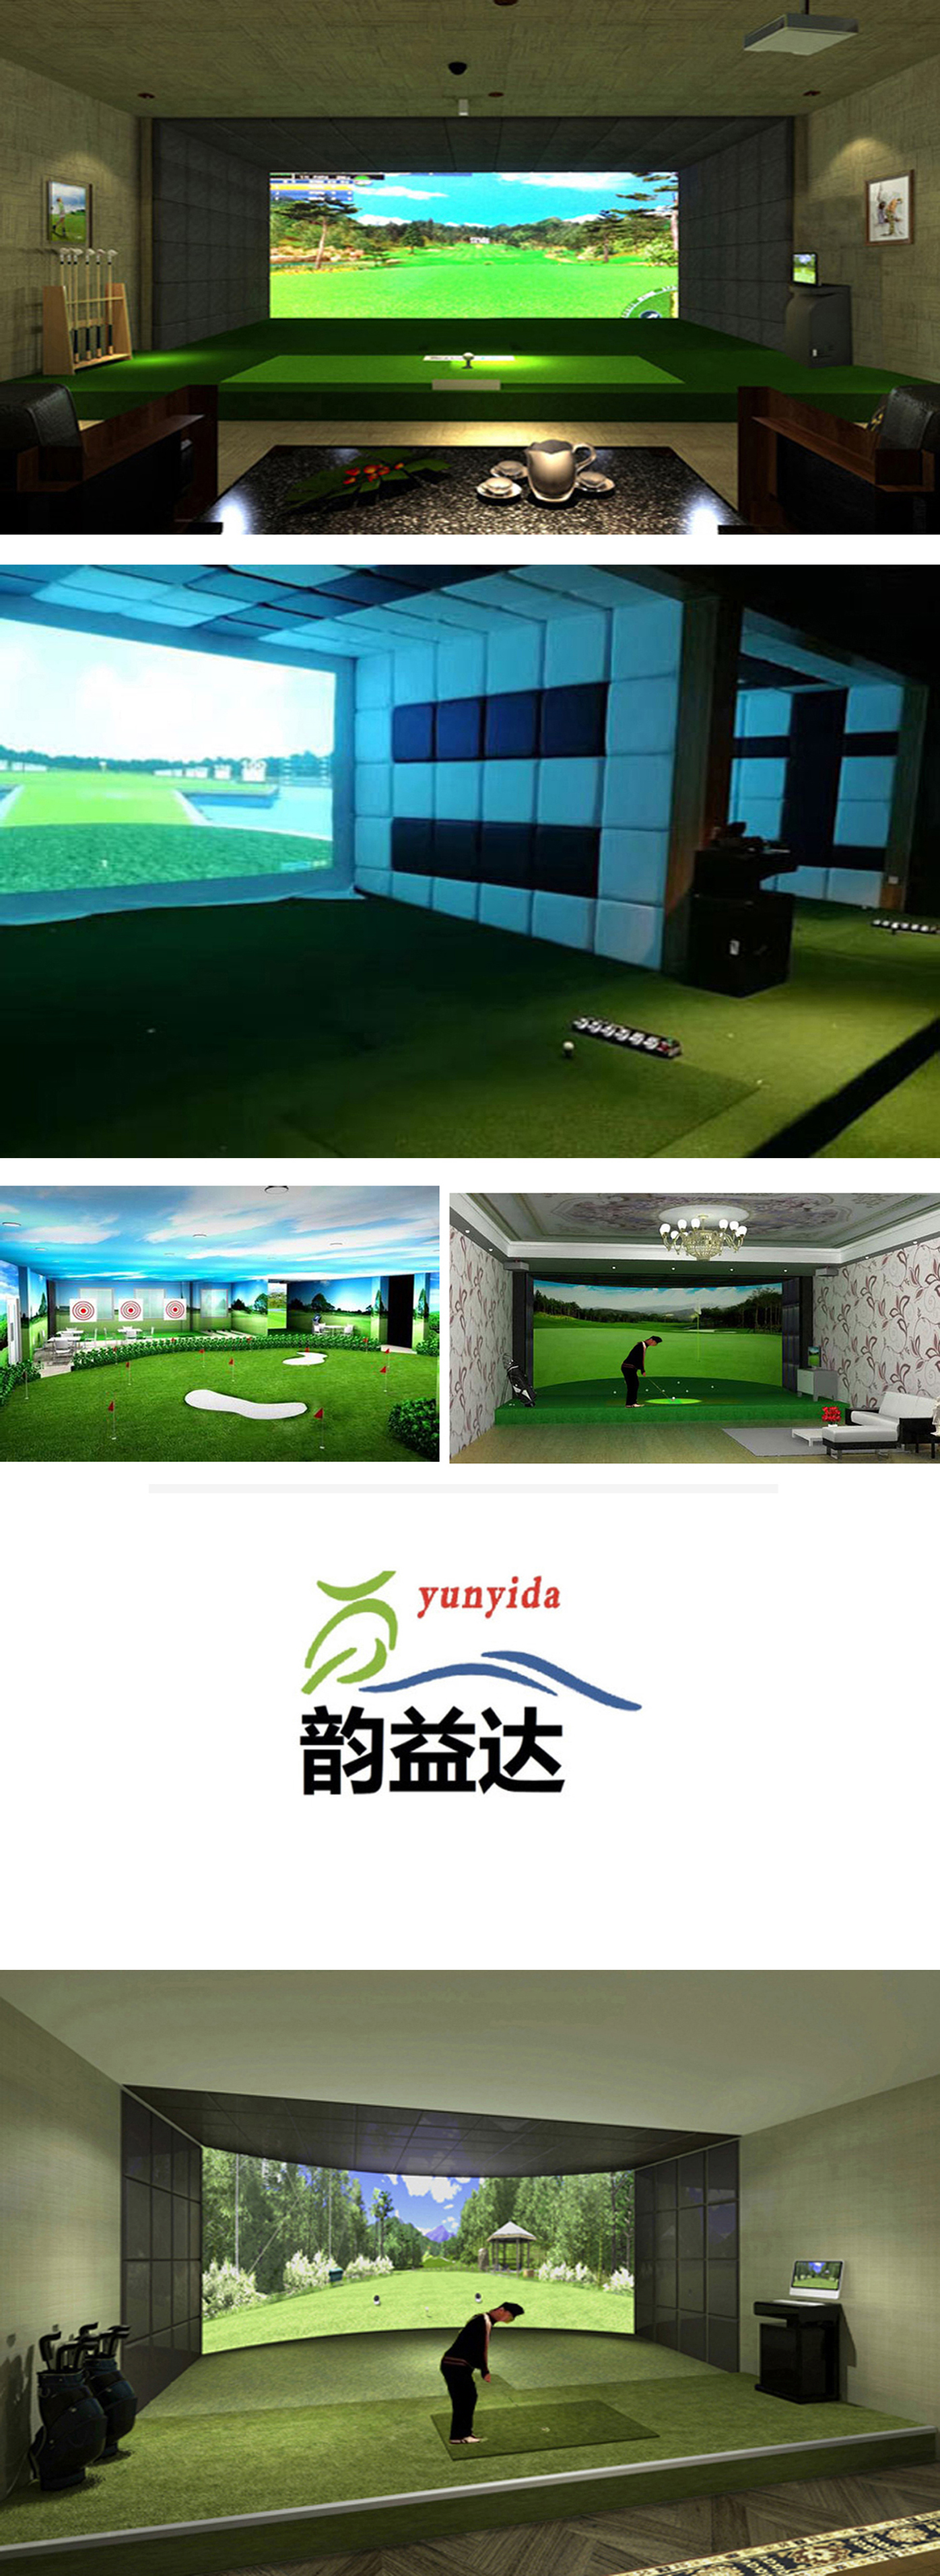 室内高尔夫练习设备 02.jpg